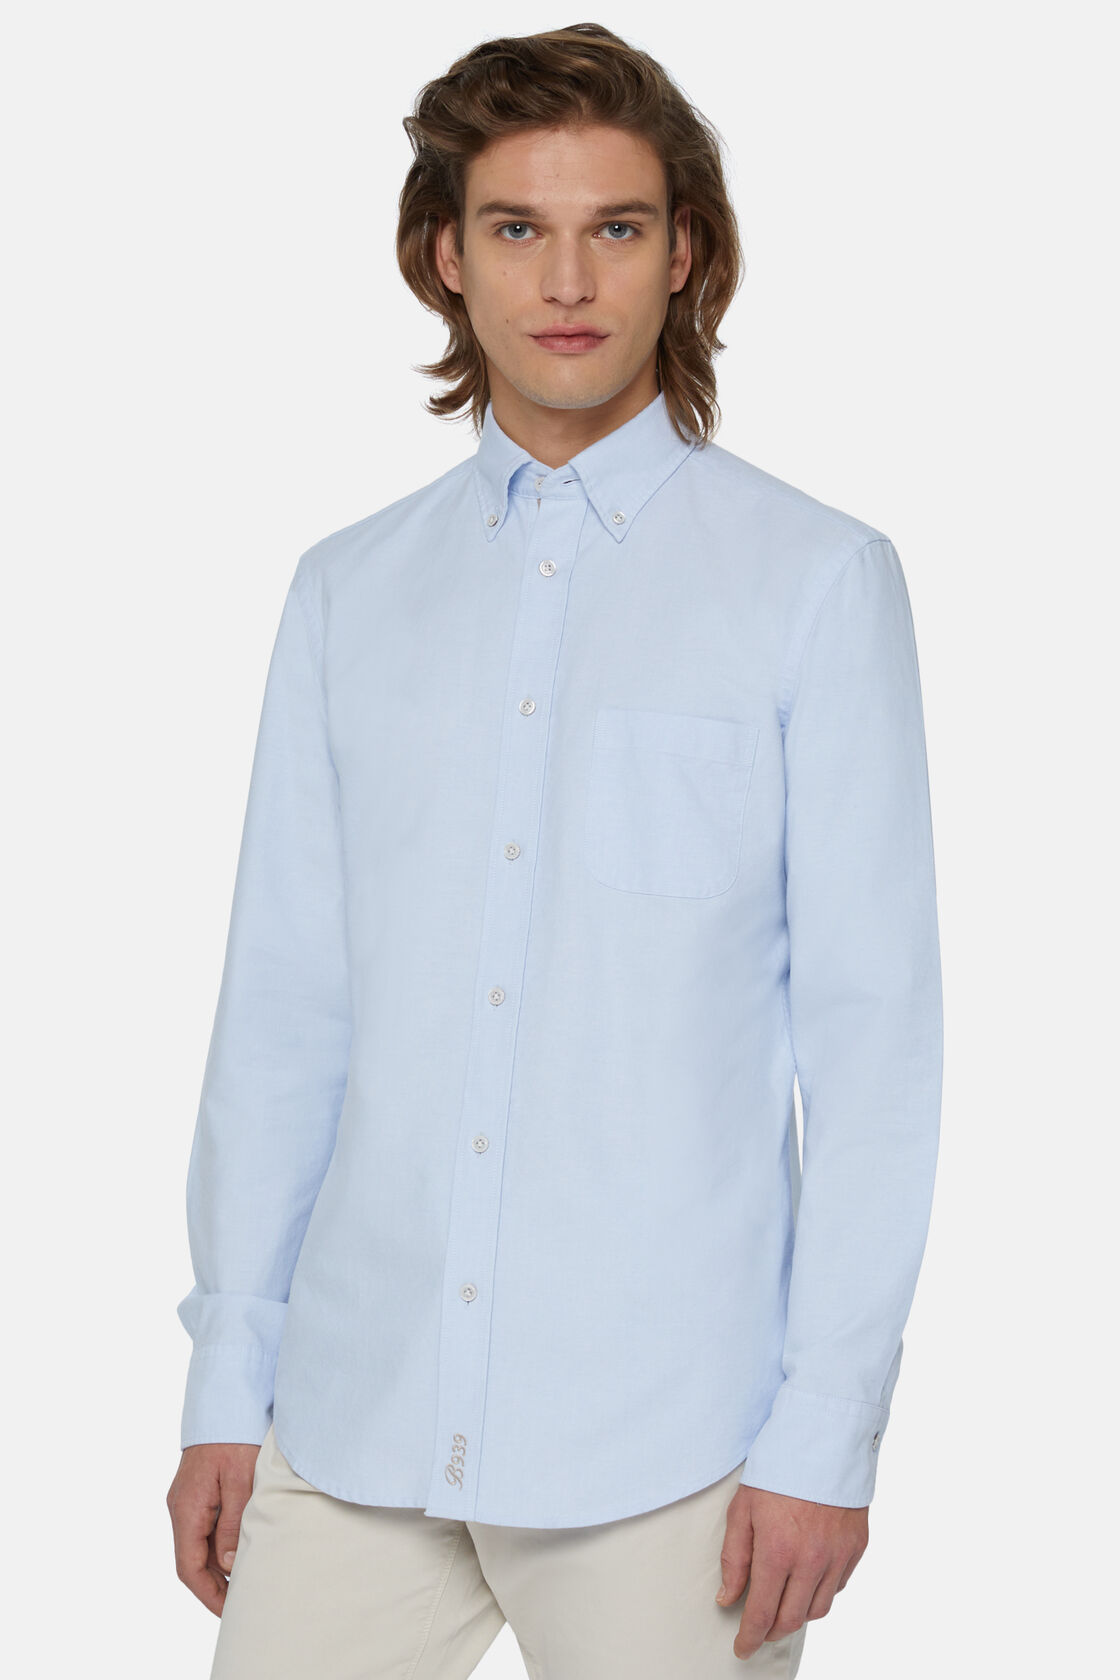 Błękitna koszula z bawełny organicznej typu Oksford, fason klasyczny, Light Blue, hi-res